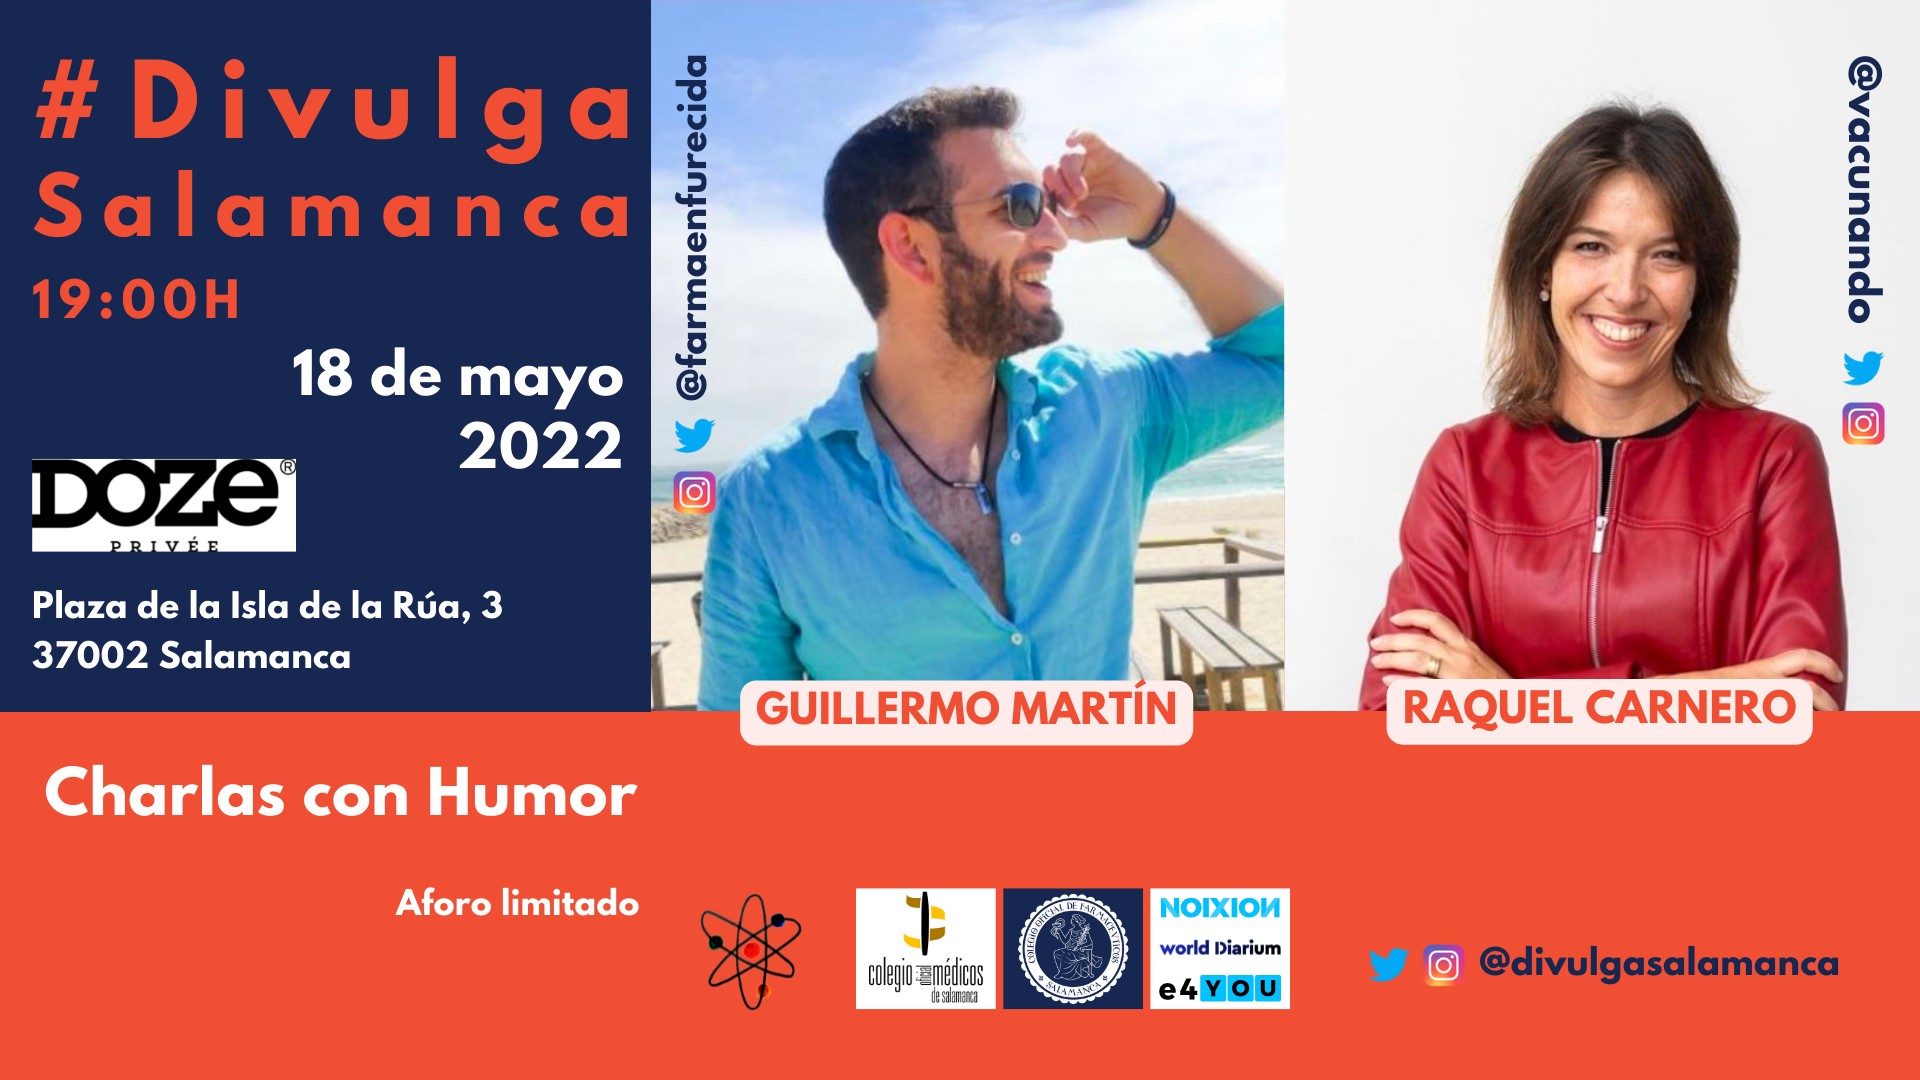 DivulgaSalamanca 2022: Charlas con humor. Guillermo Martín -Farmacia Enfurecida- y Raquel Carnero